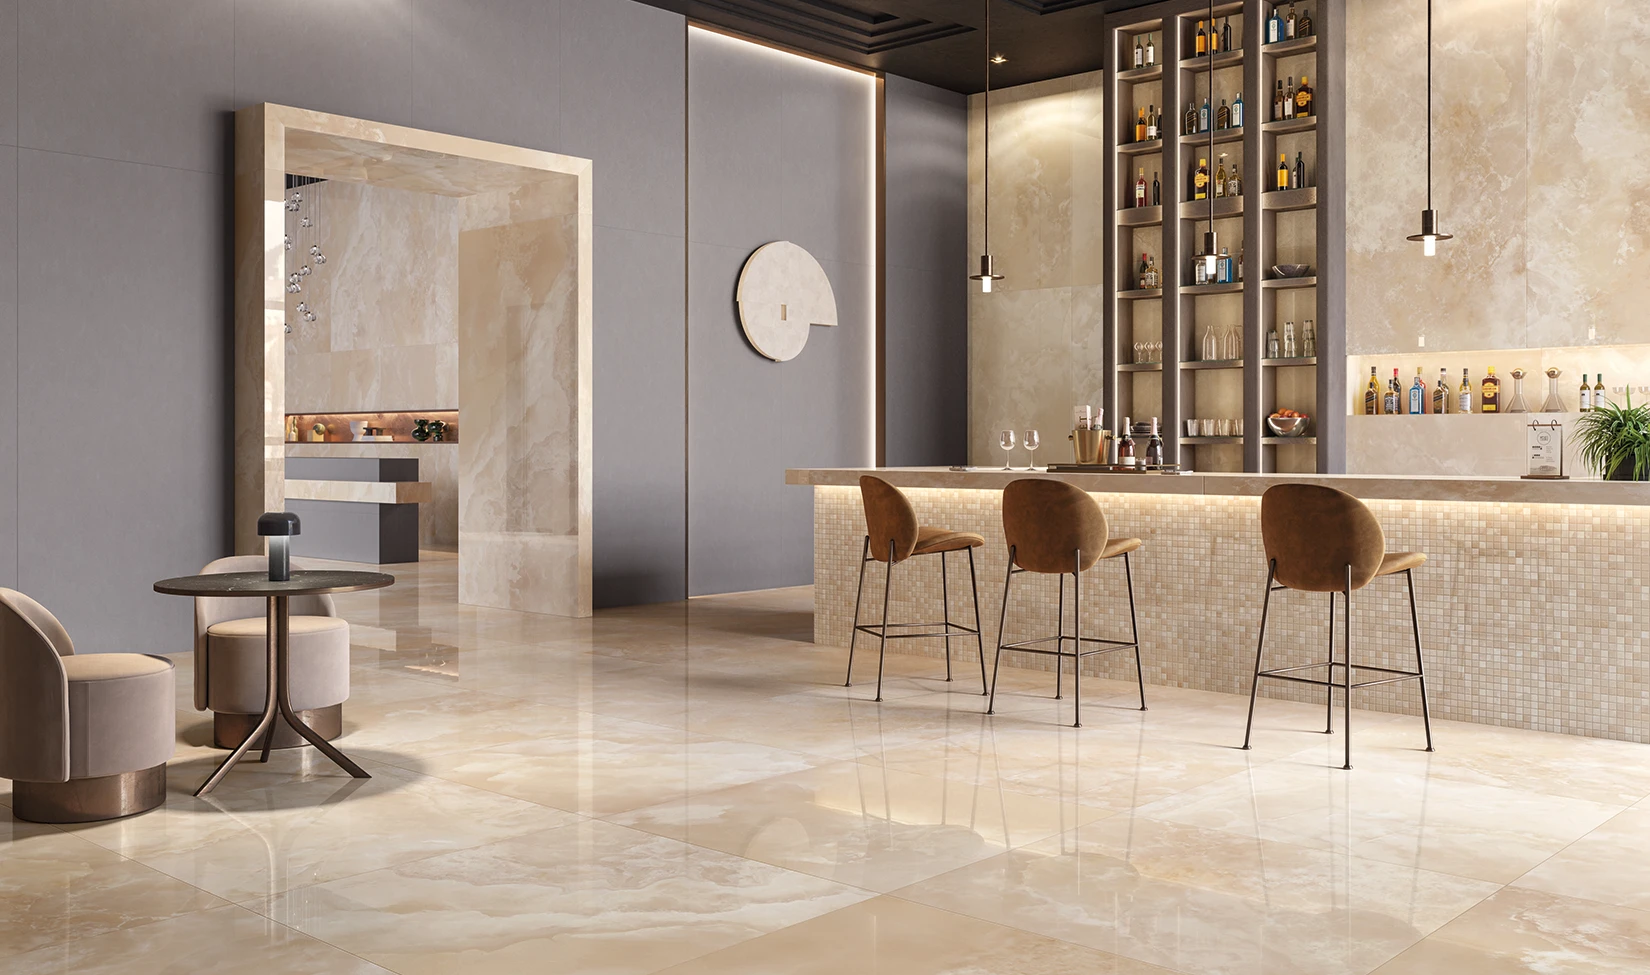 Elegante lobby di hotel con pavimento in gres porcellanato effetto marmo Onice colore Honey, zona bar con sgabelli moderni e illuminazione calda.